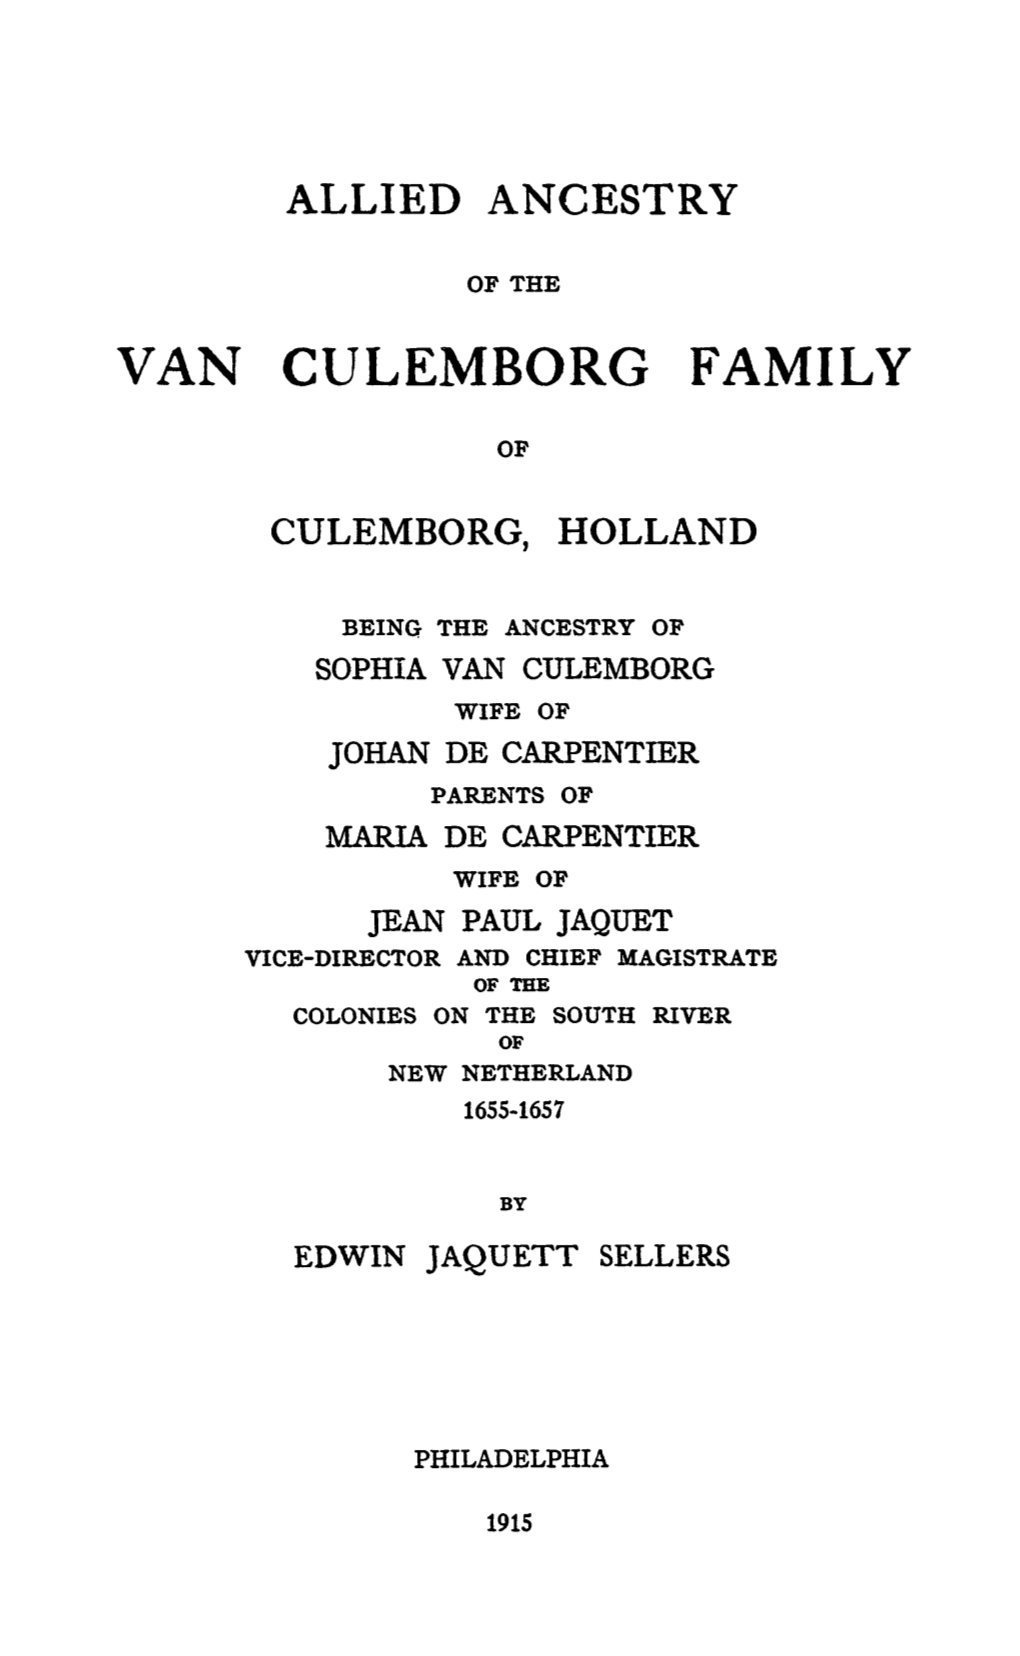 Van Culemborg Family